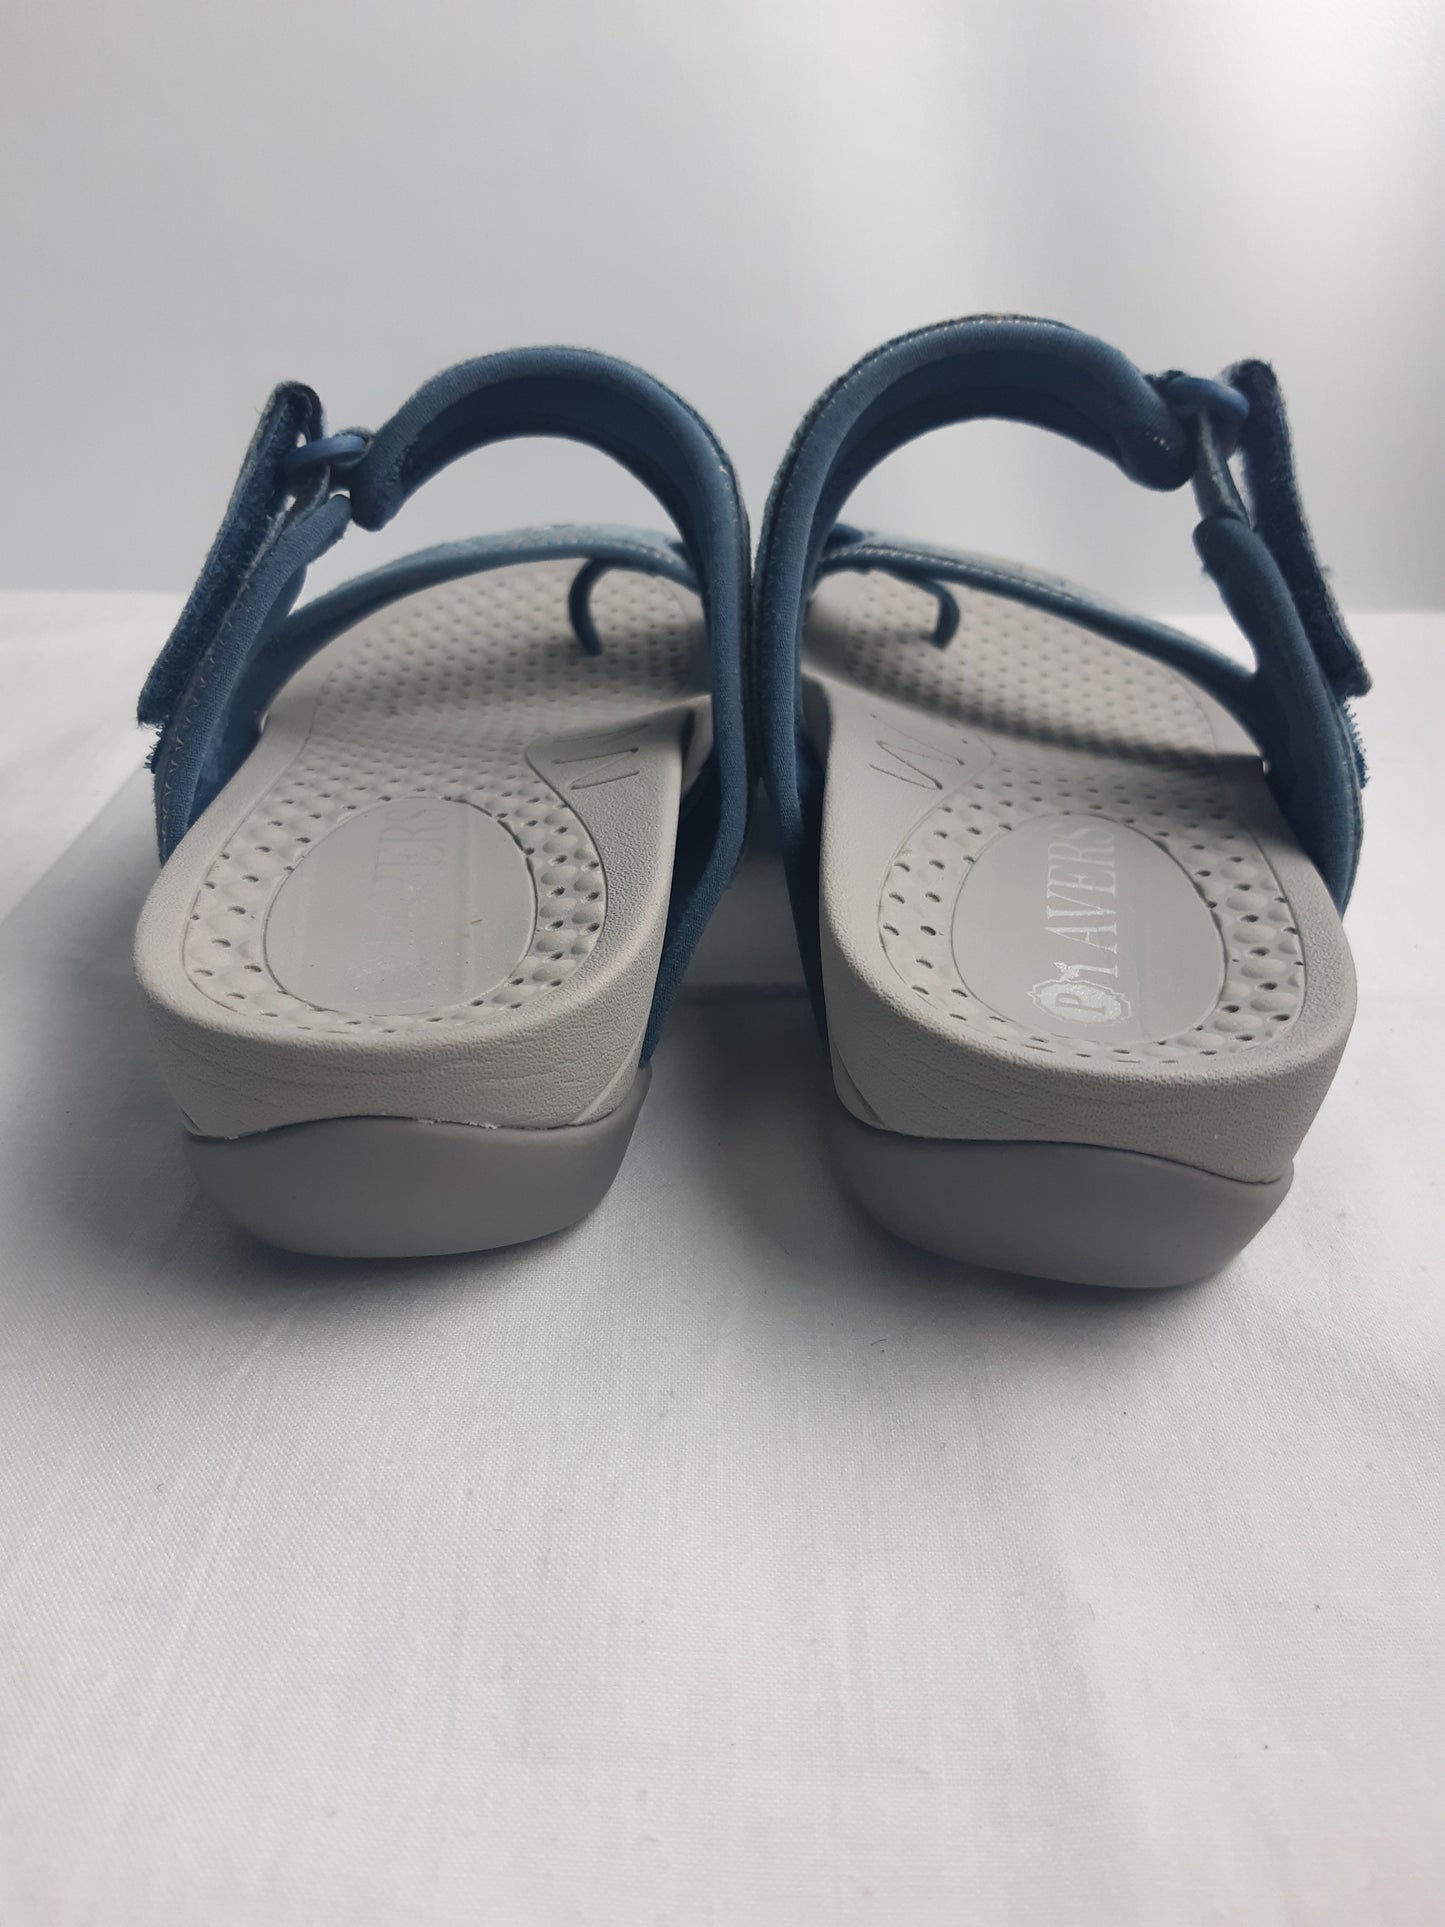 Pavers Blue Women's Sandals Size 6